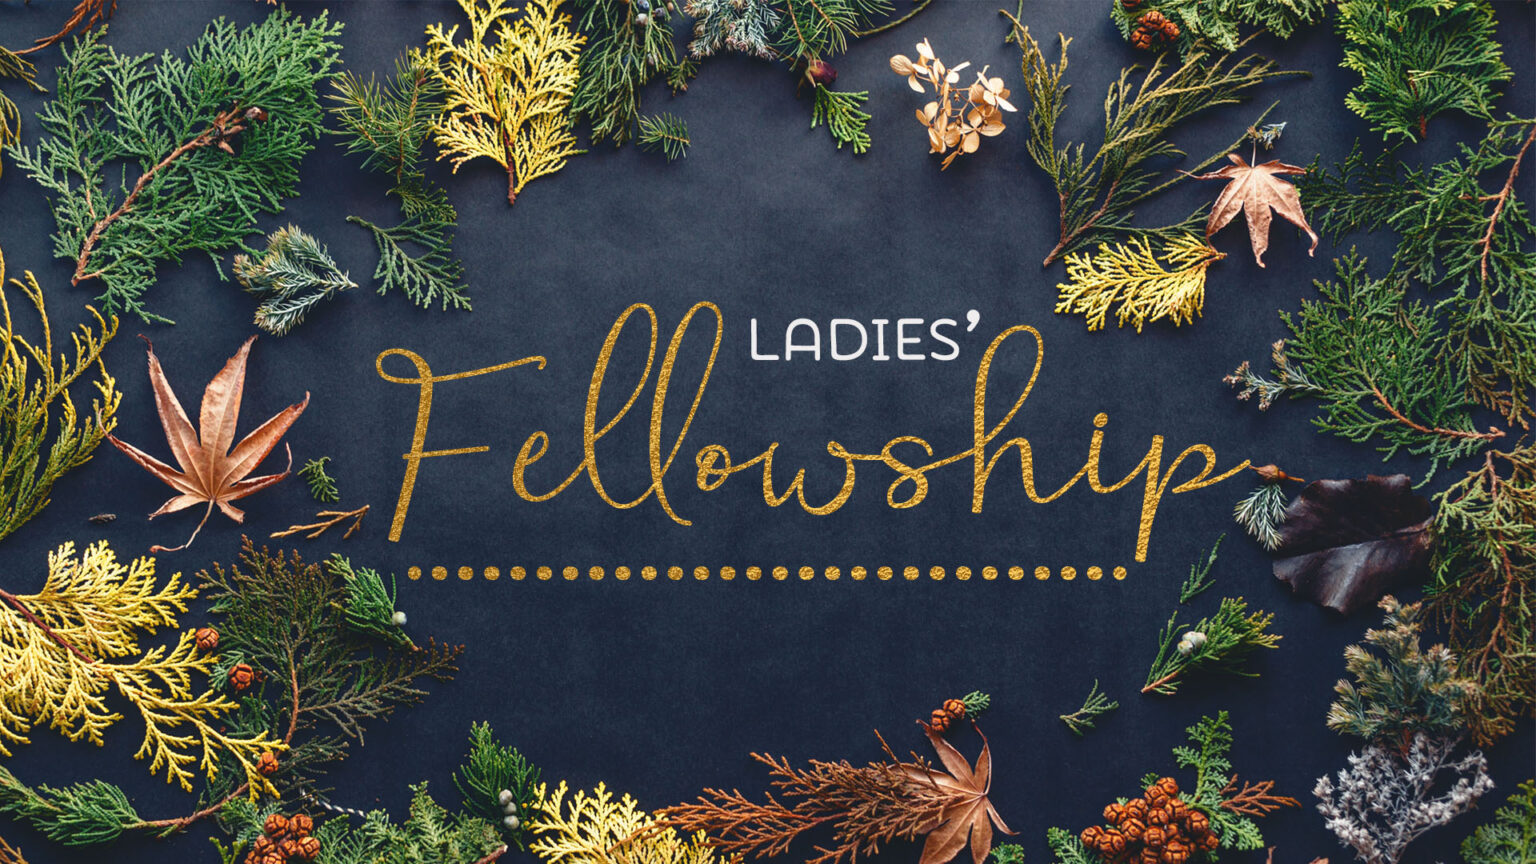 Ladies' Fellowship Friendship Baptist Church